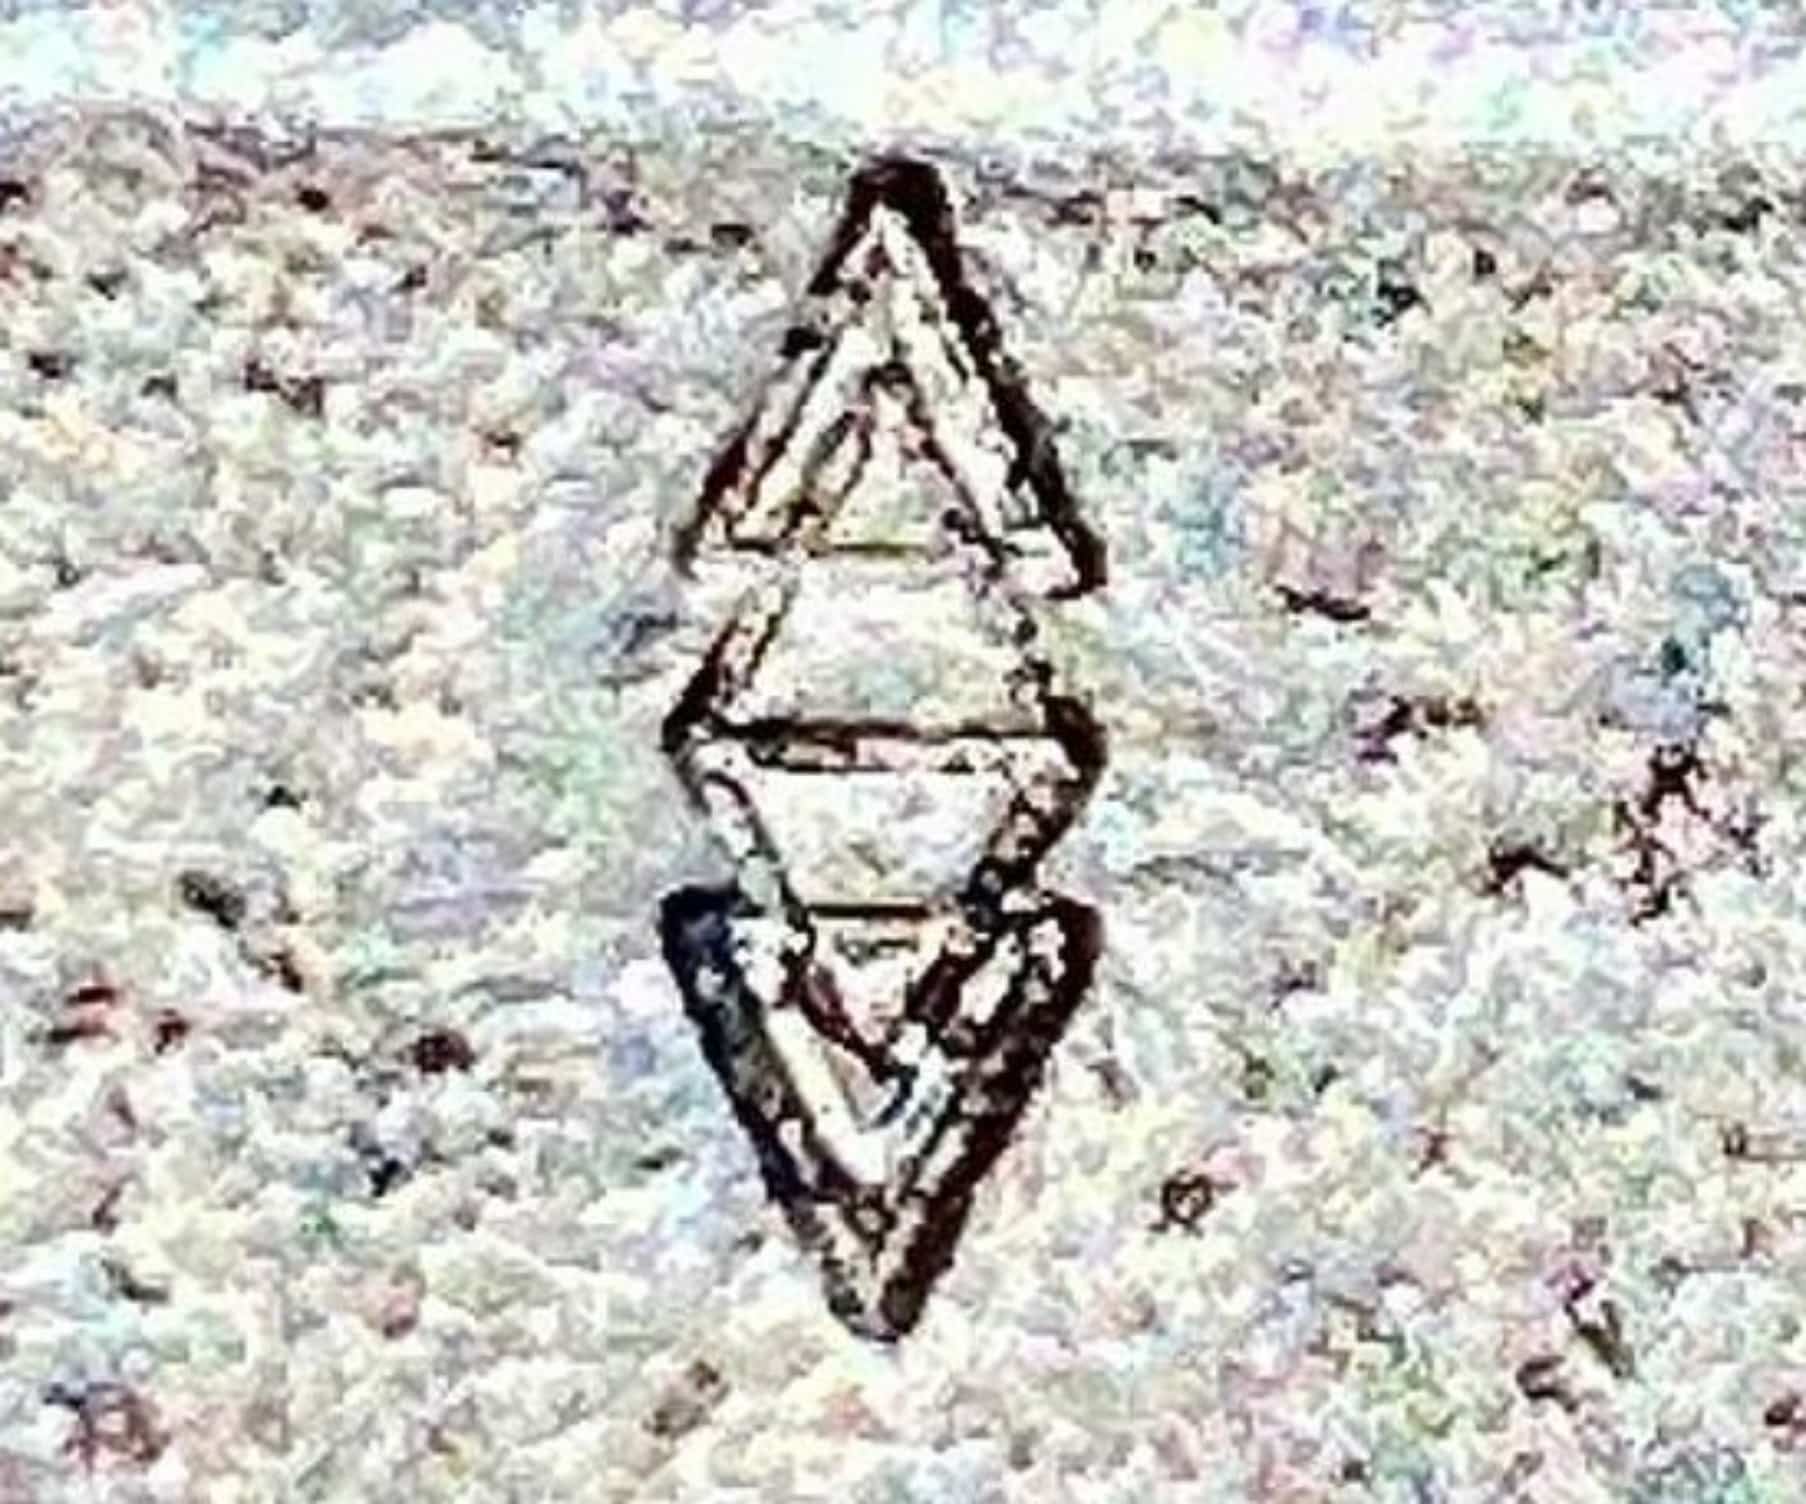 Diamond Mines vintage silver hallmark stamped